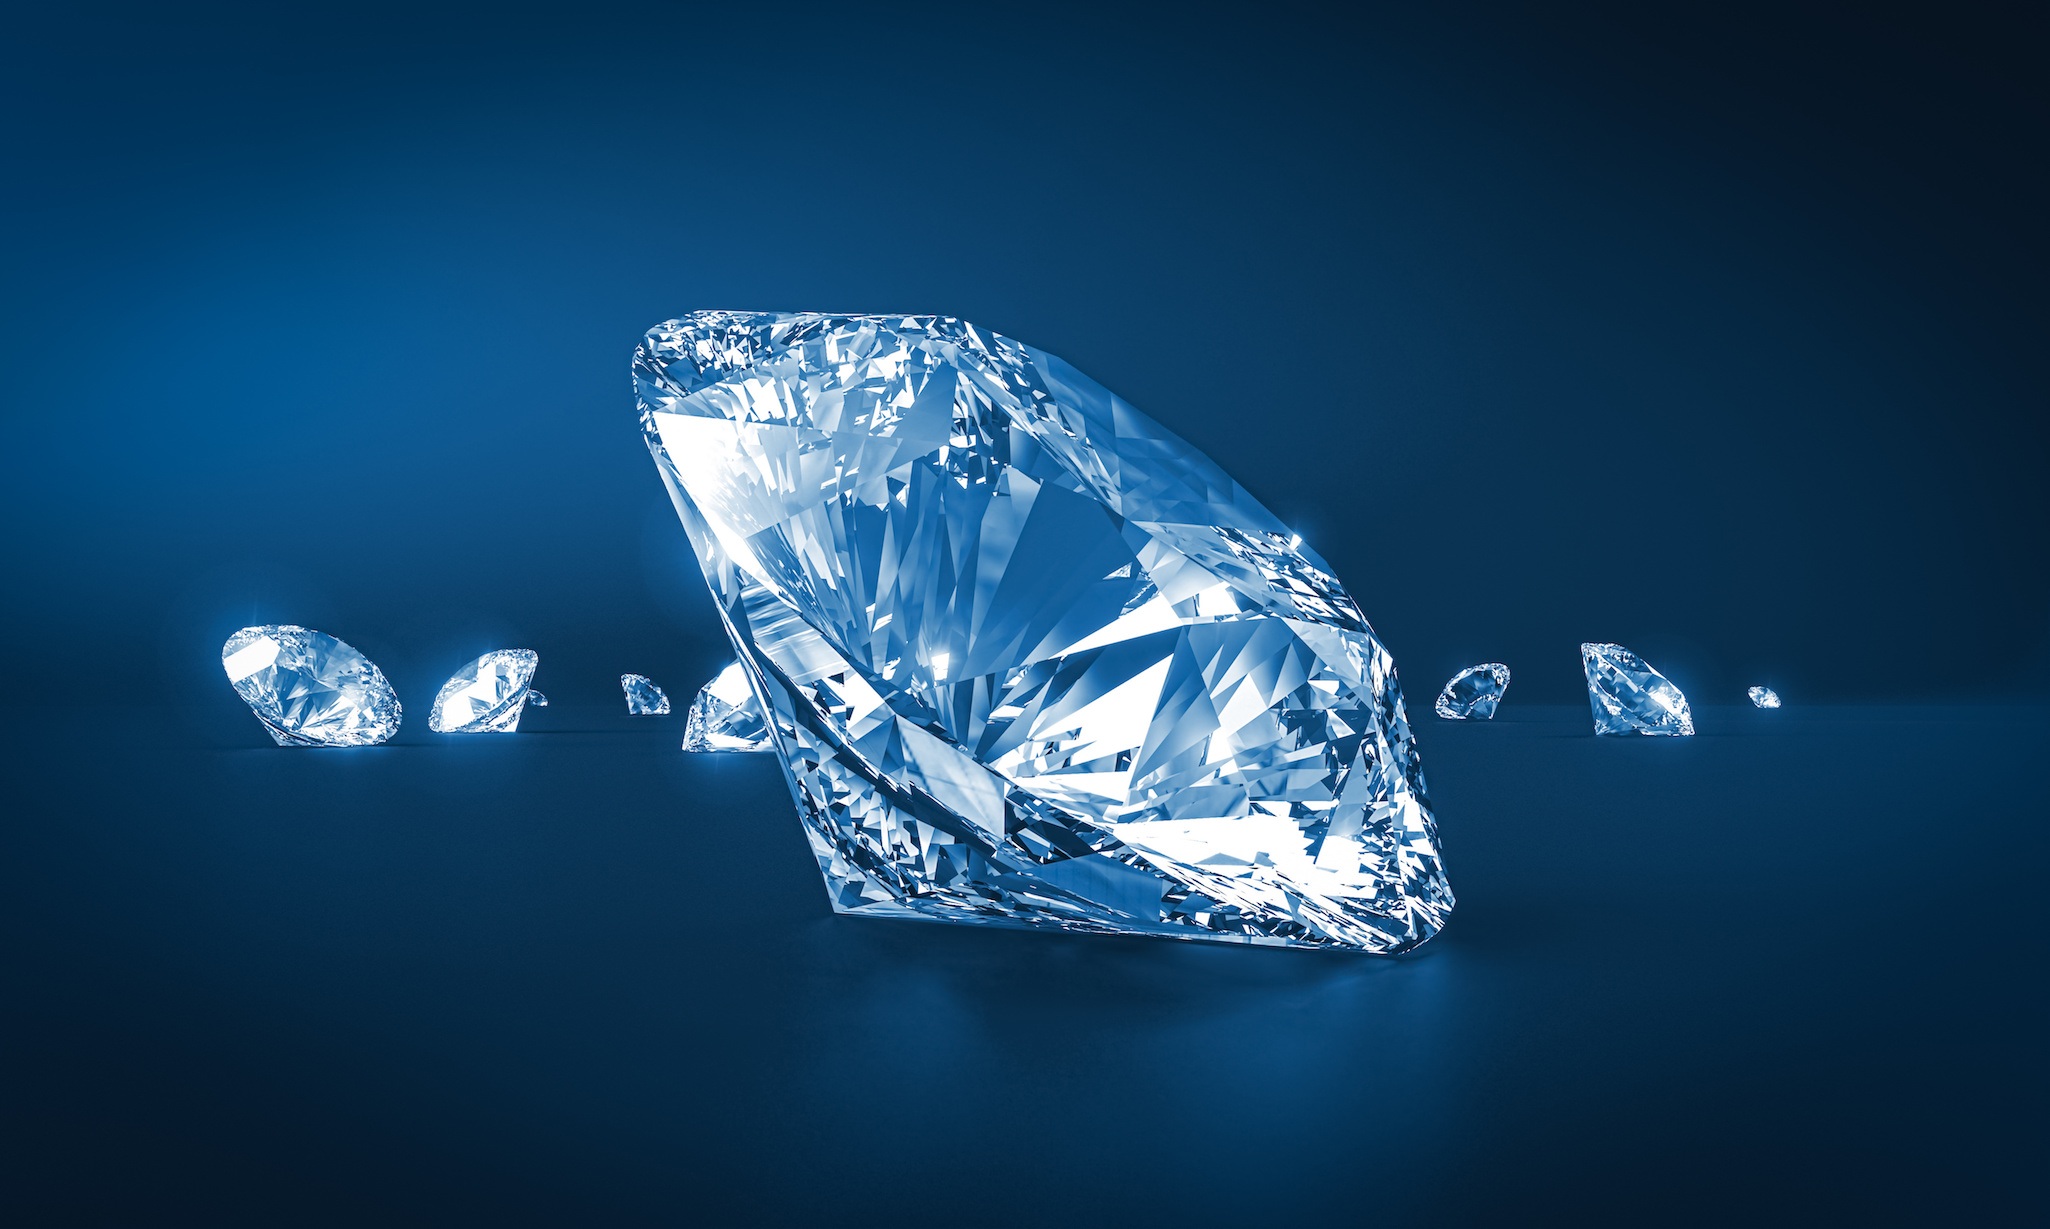 Des super-diamants de synthèse nommés BC8 pourraient bientôt détrôner le diamant comme minéral le plus résistant. © tiero, Adobe Stock